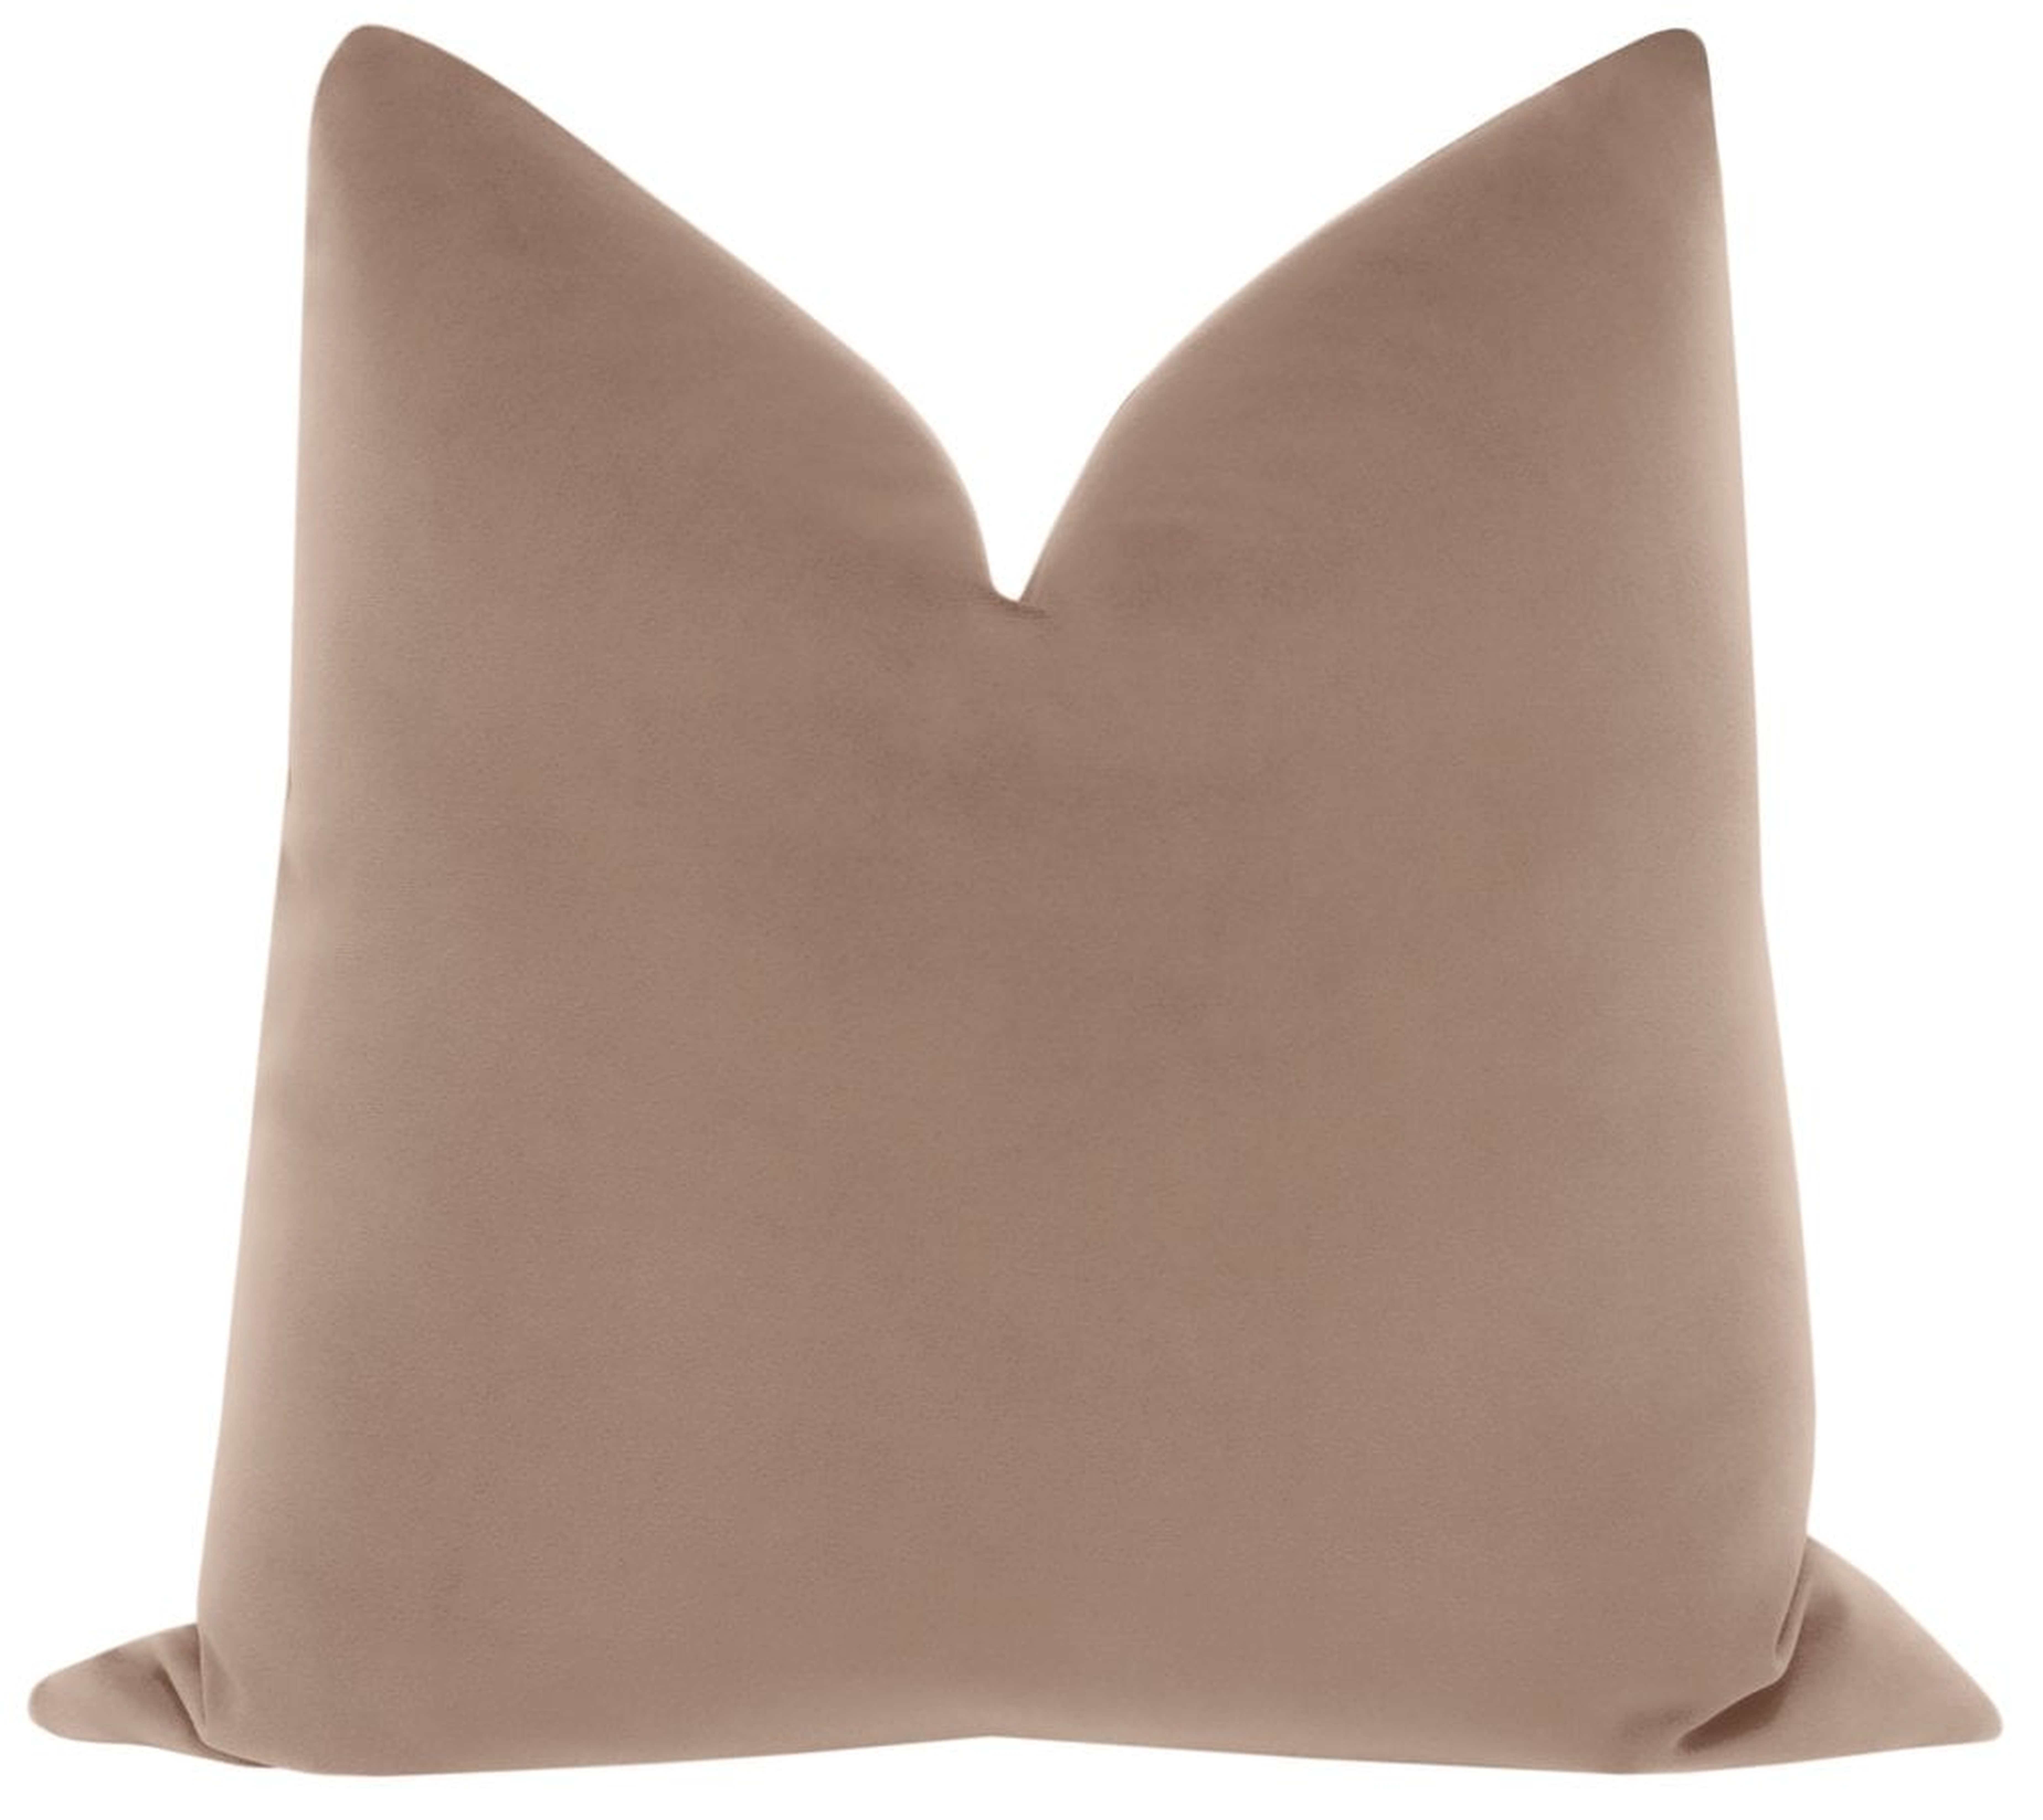 Signature Velvet Pillow Cover, Mauve, 20" x 20" - Little Design Company